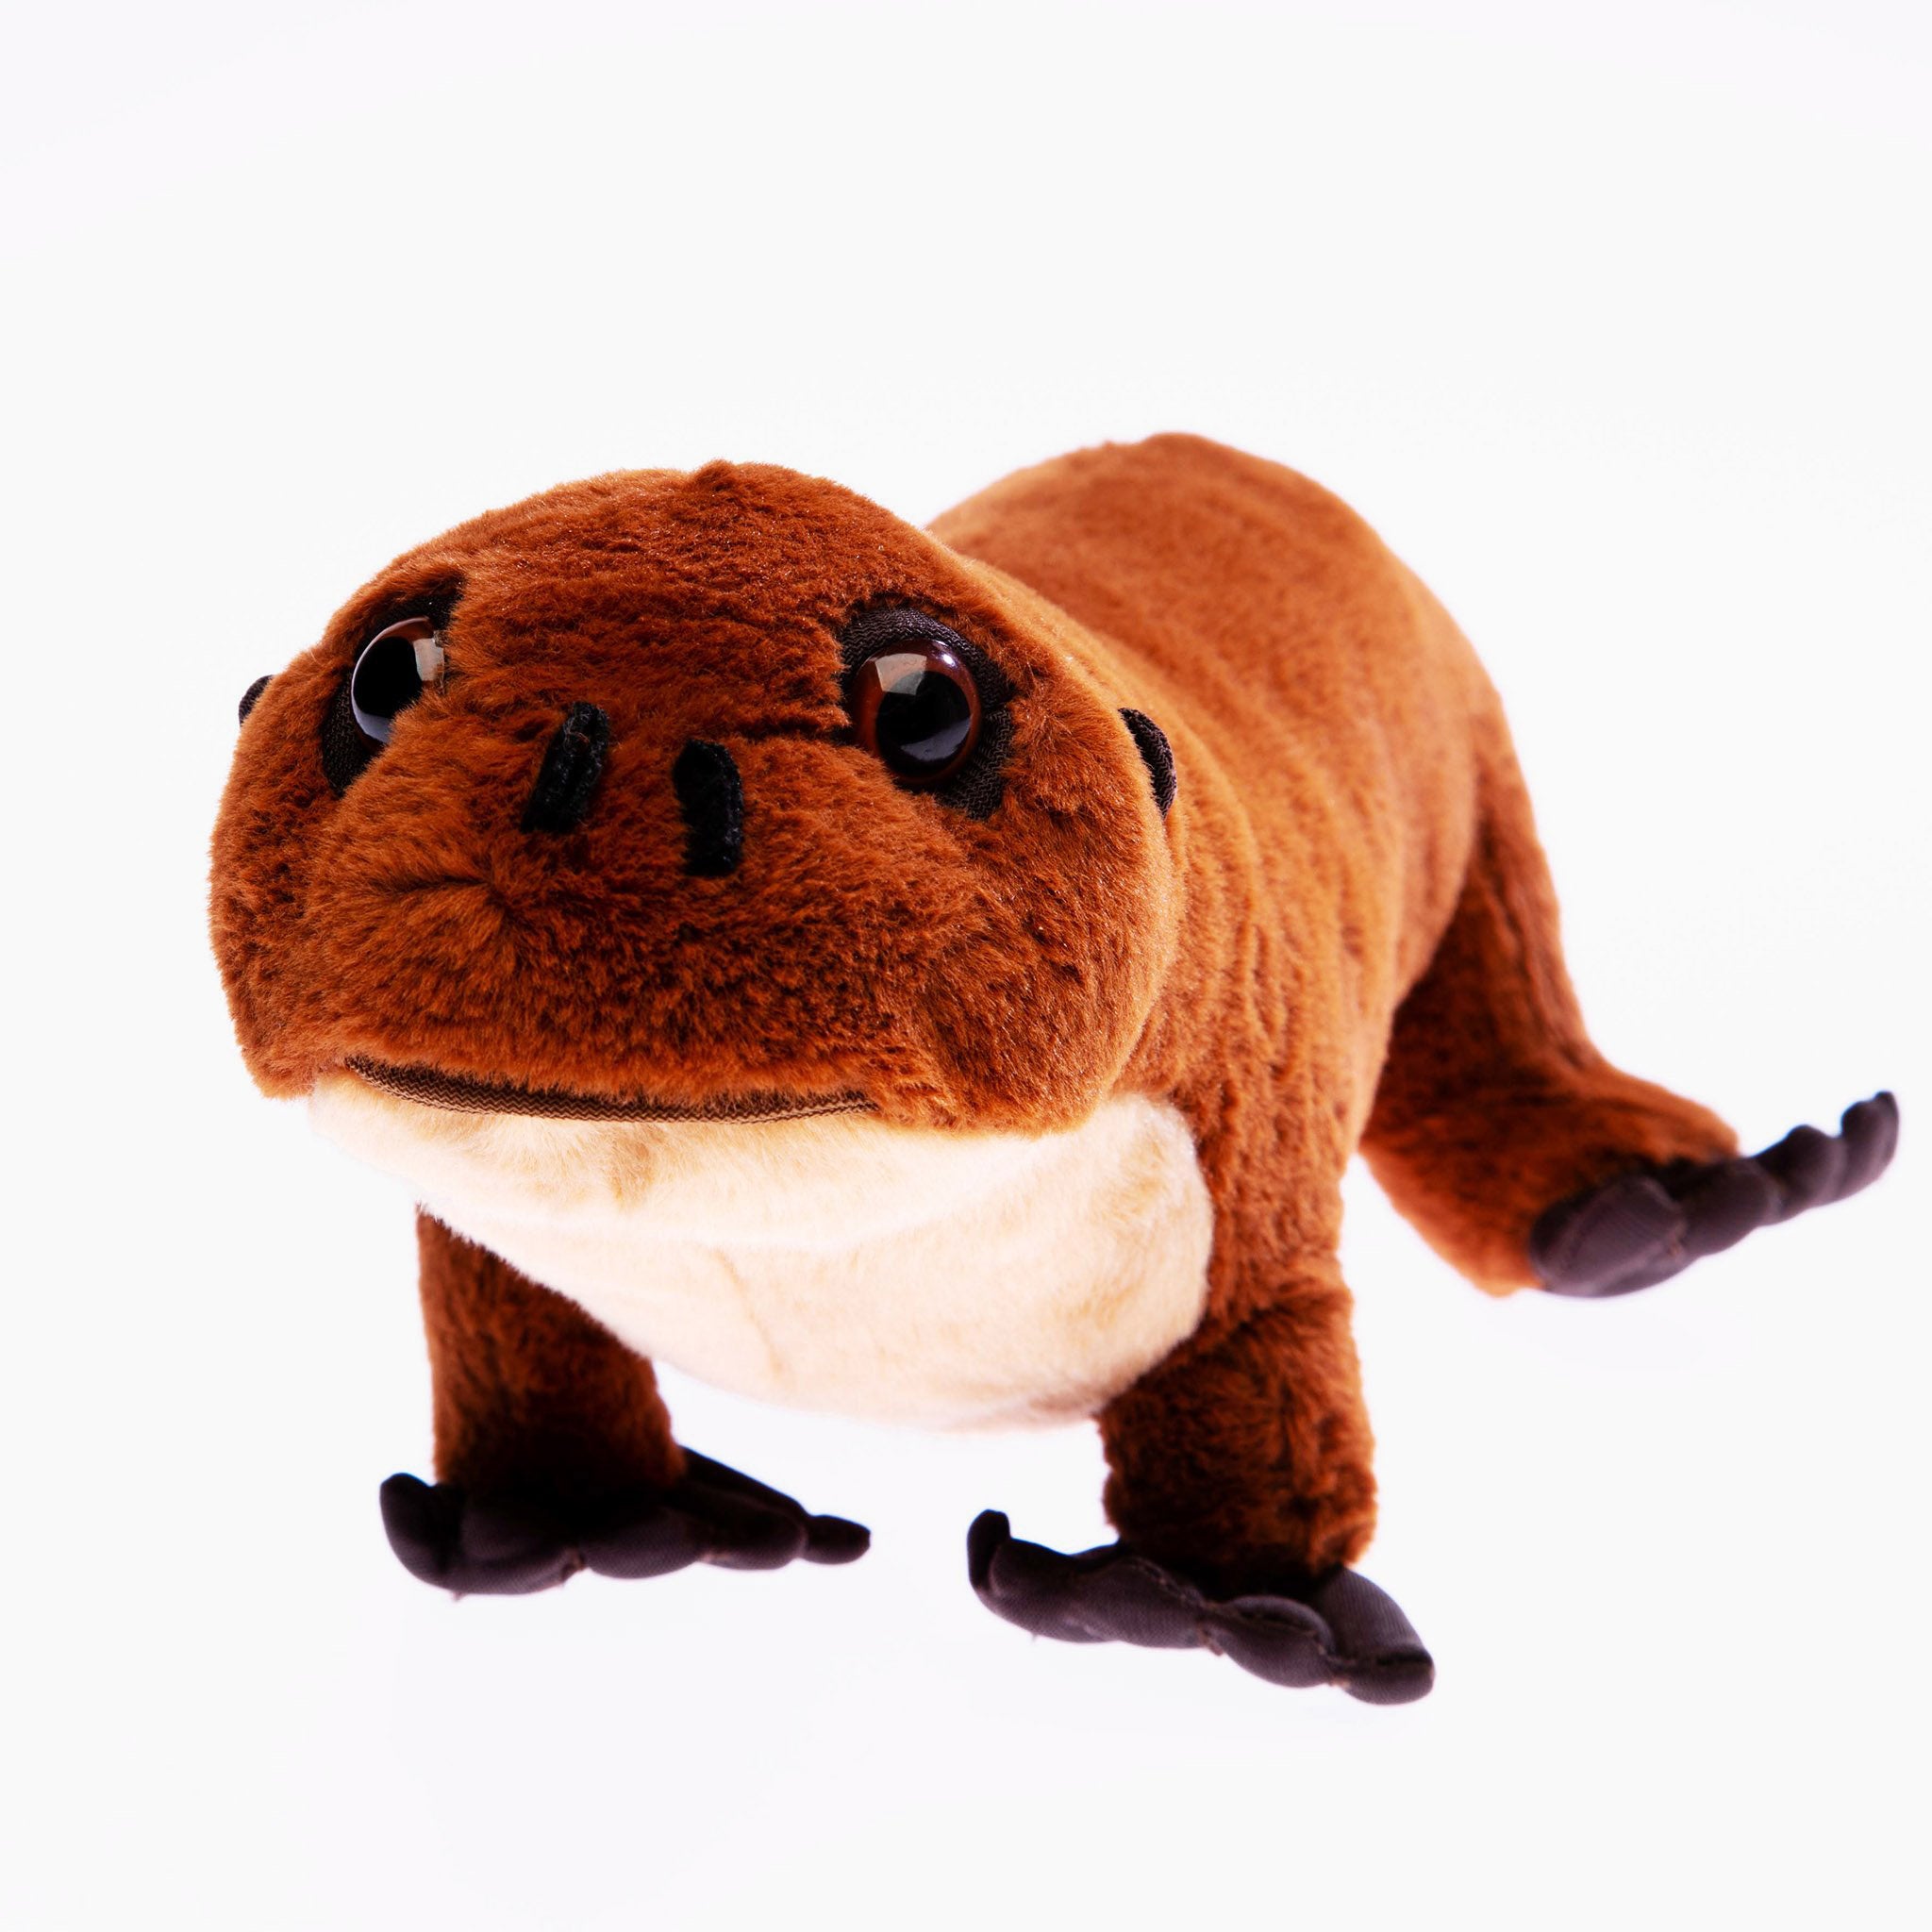 Sad Otter Plush